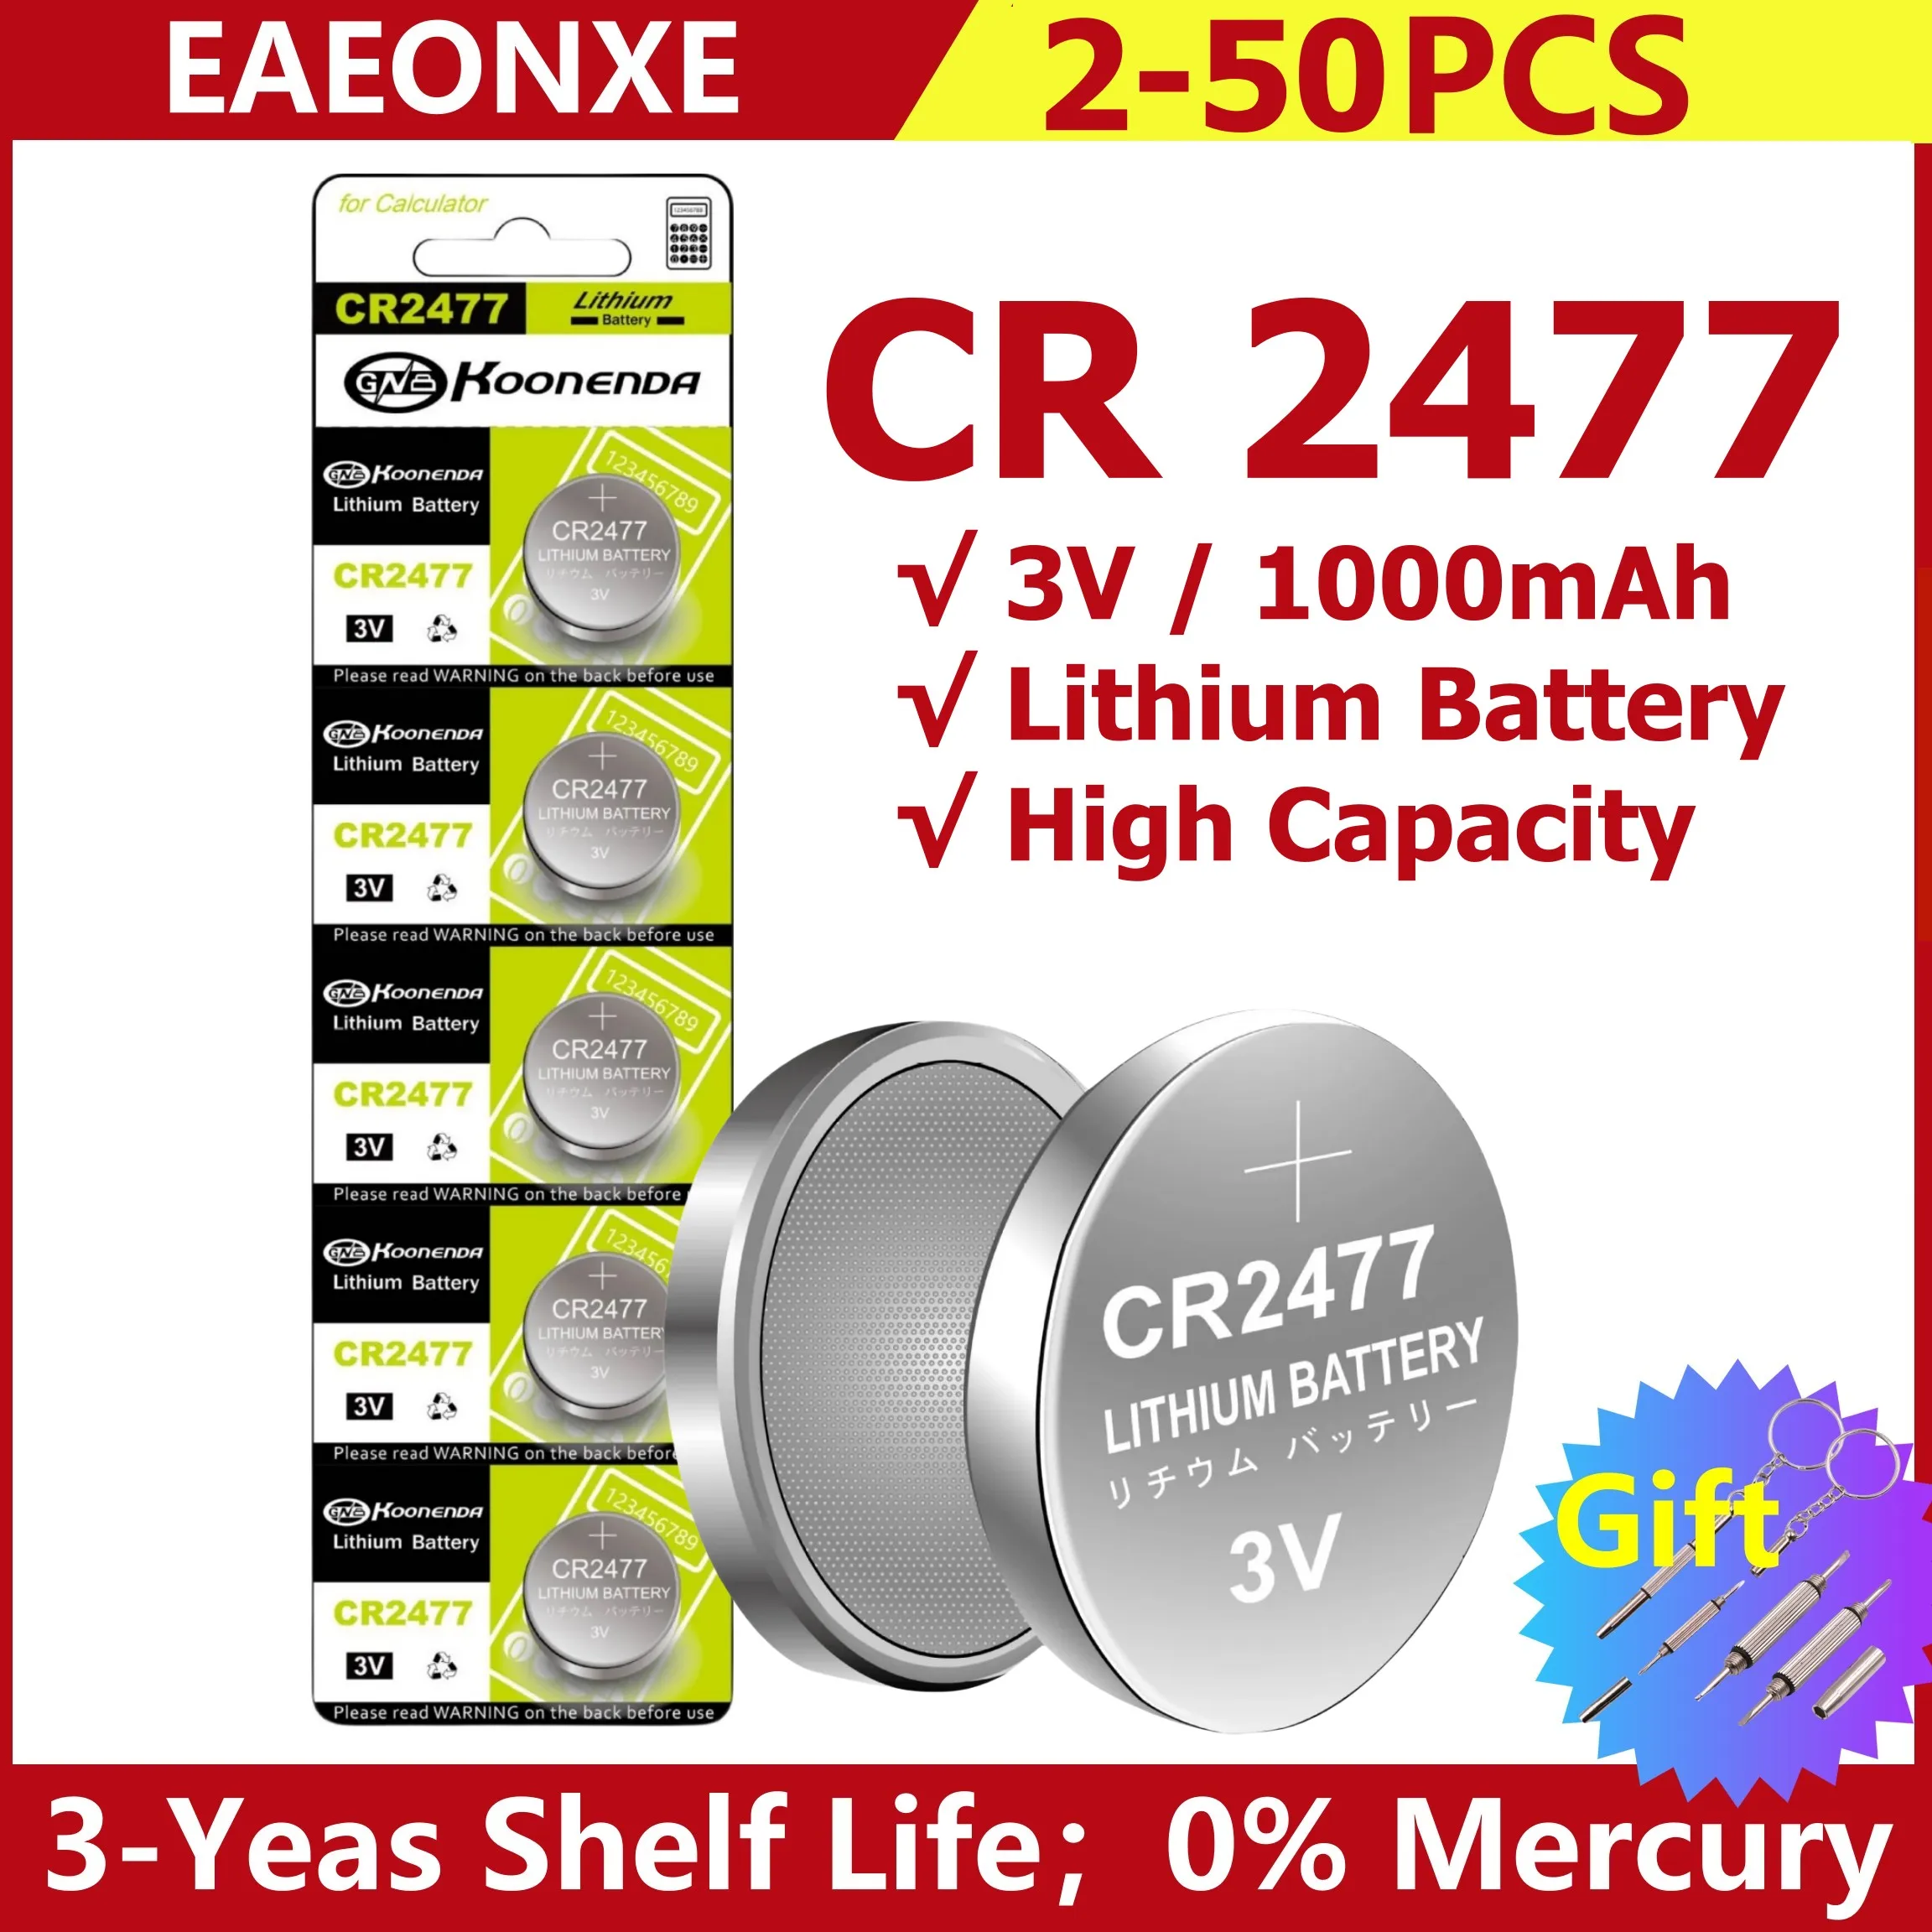 Аккумуляторная батарея CR2477 с кнопочными элементами большой емкости 2-50 шт, 2477 батареек для часов, для весов дистанционного калькулятора, Стабильная работа с подарком